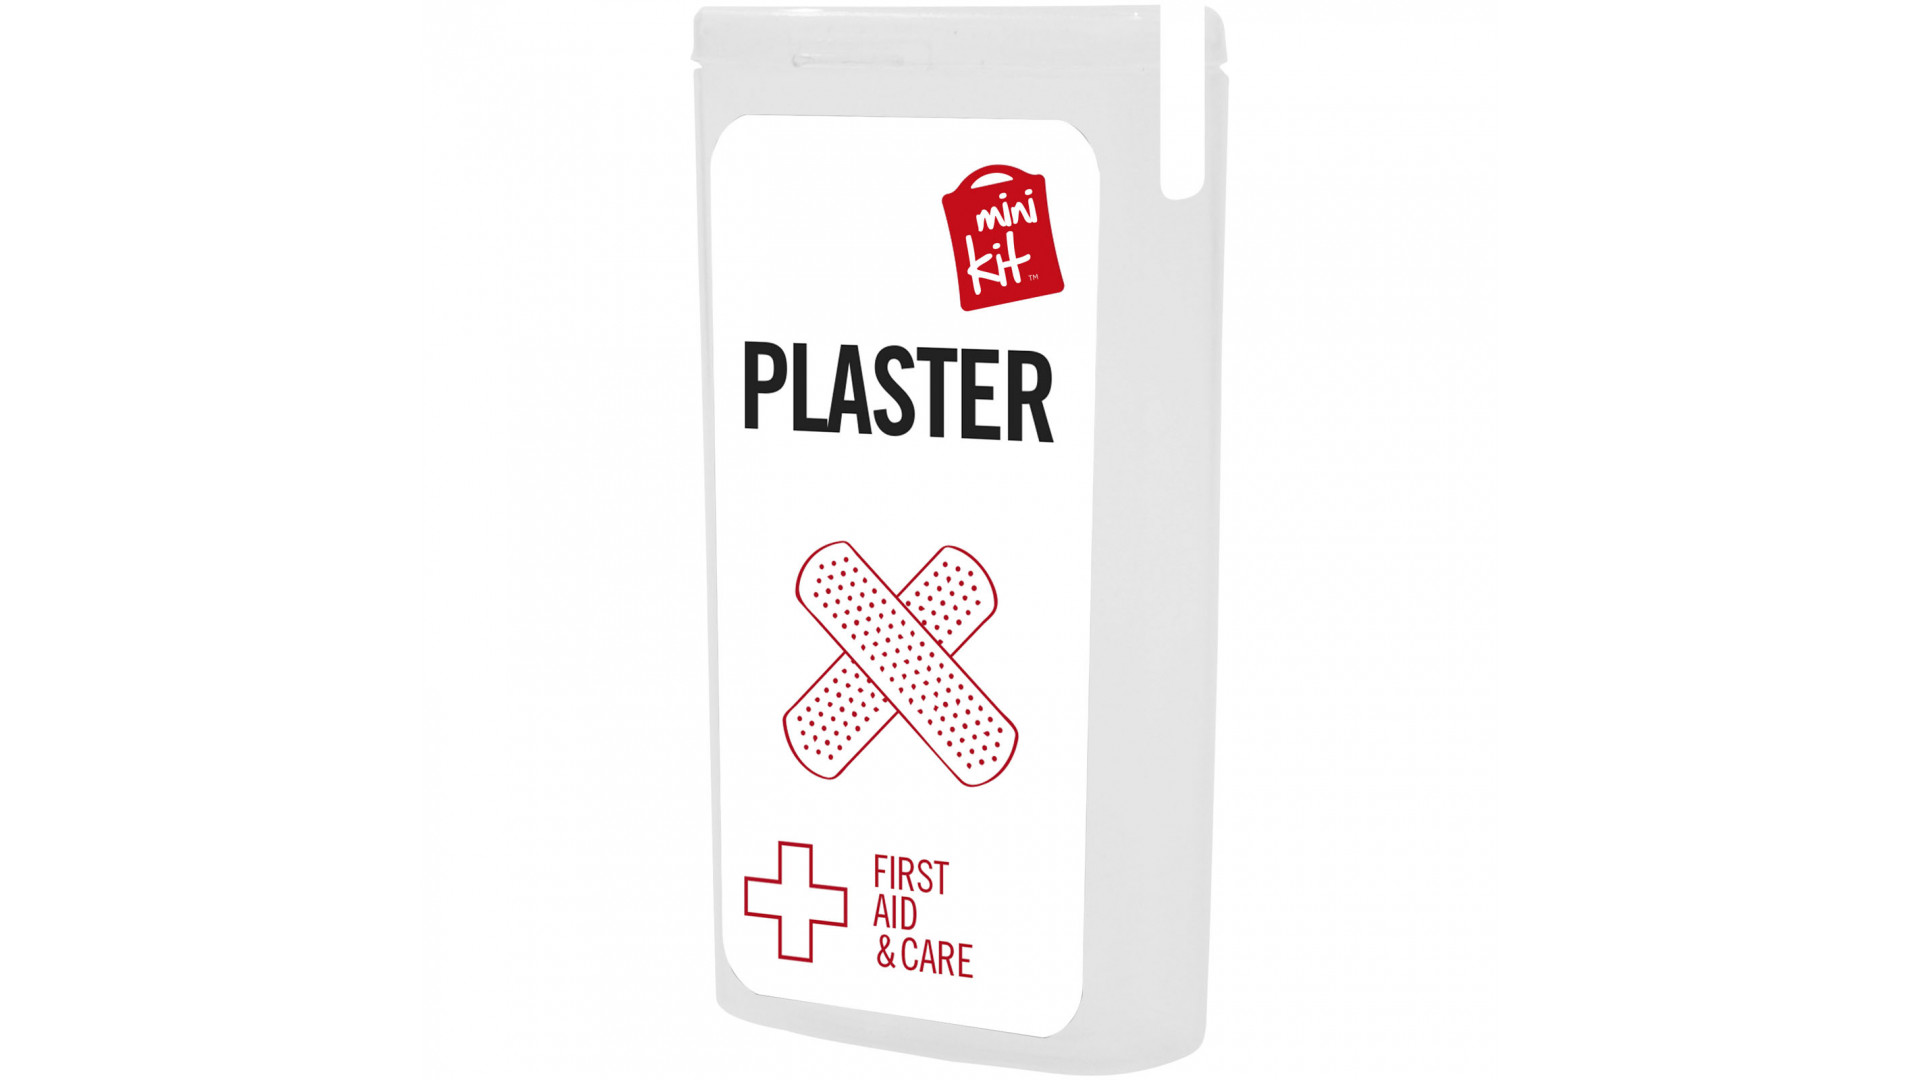 Pflasterbox Care Card mit Werbeaufdruck als Streuartikel